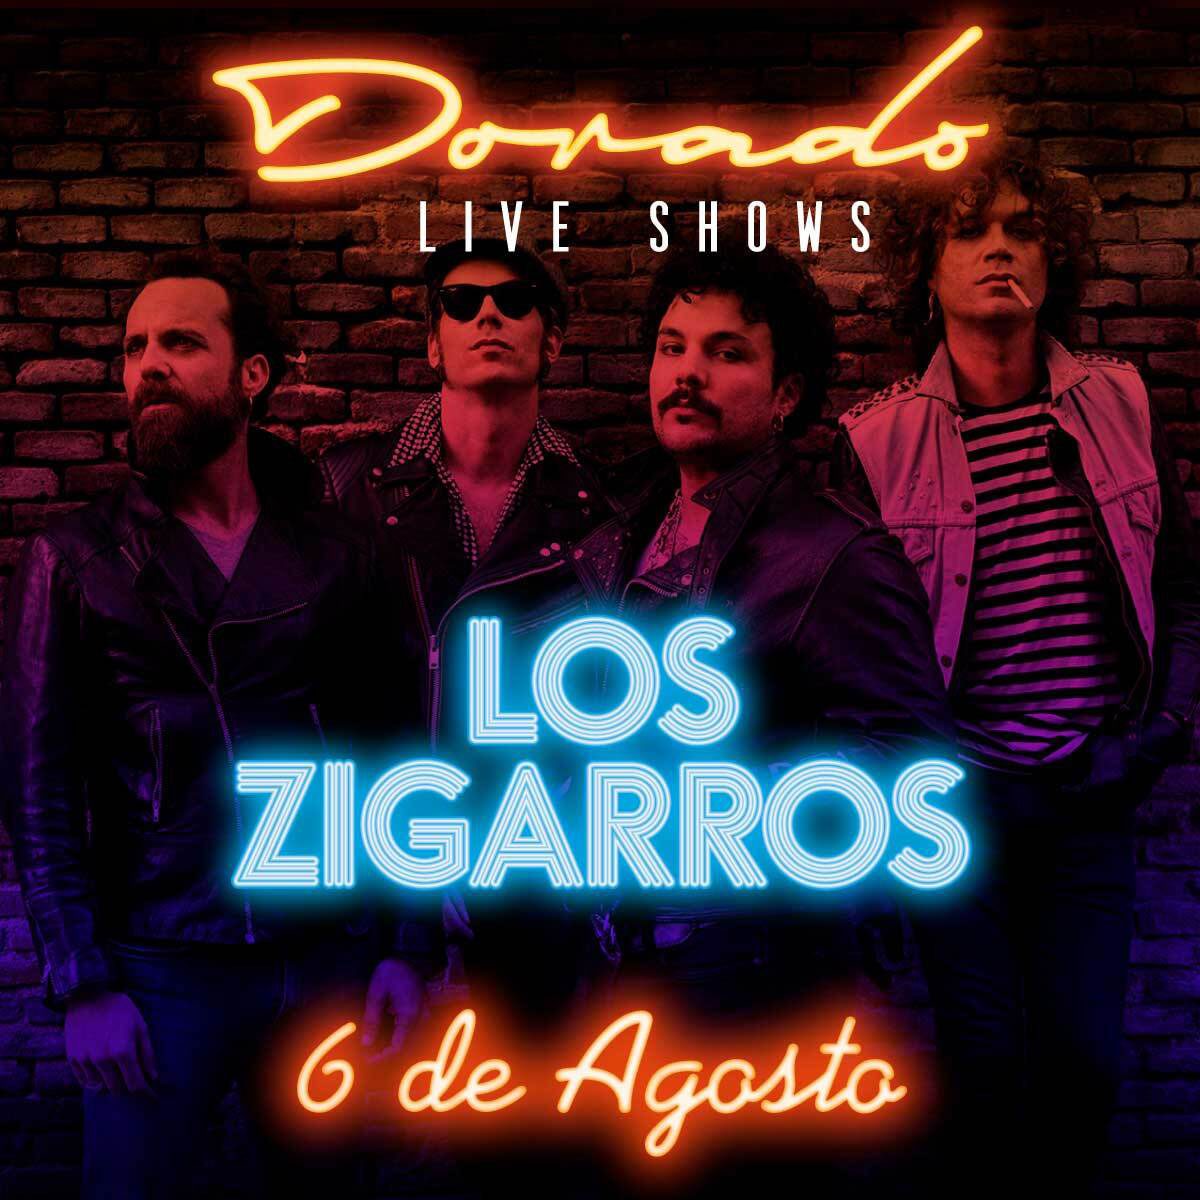 konzert-los-zigarros-dorado-live-show-hotel-santos-ibiza-2020-welcometoibiza